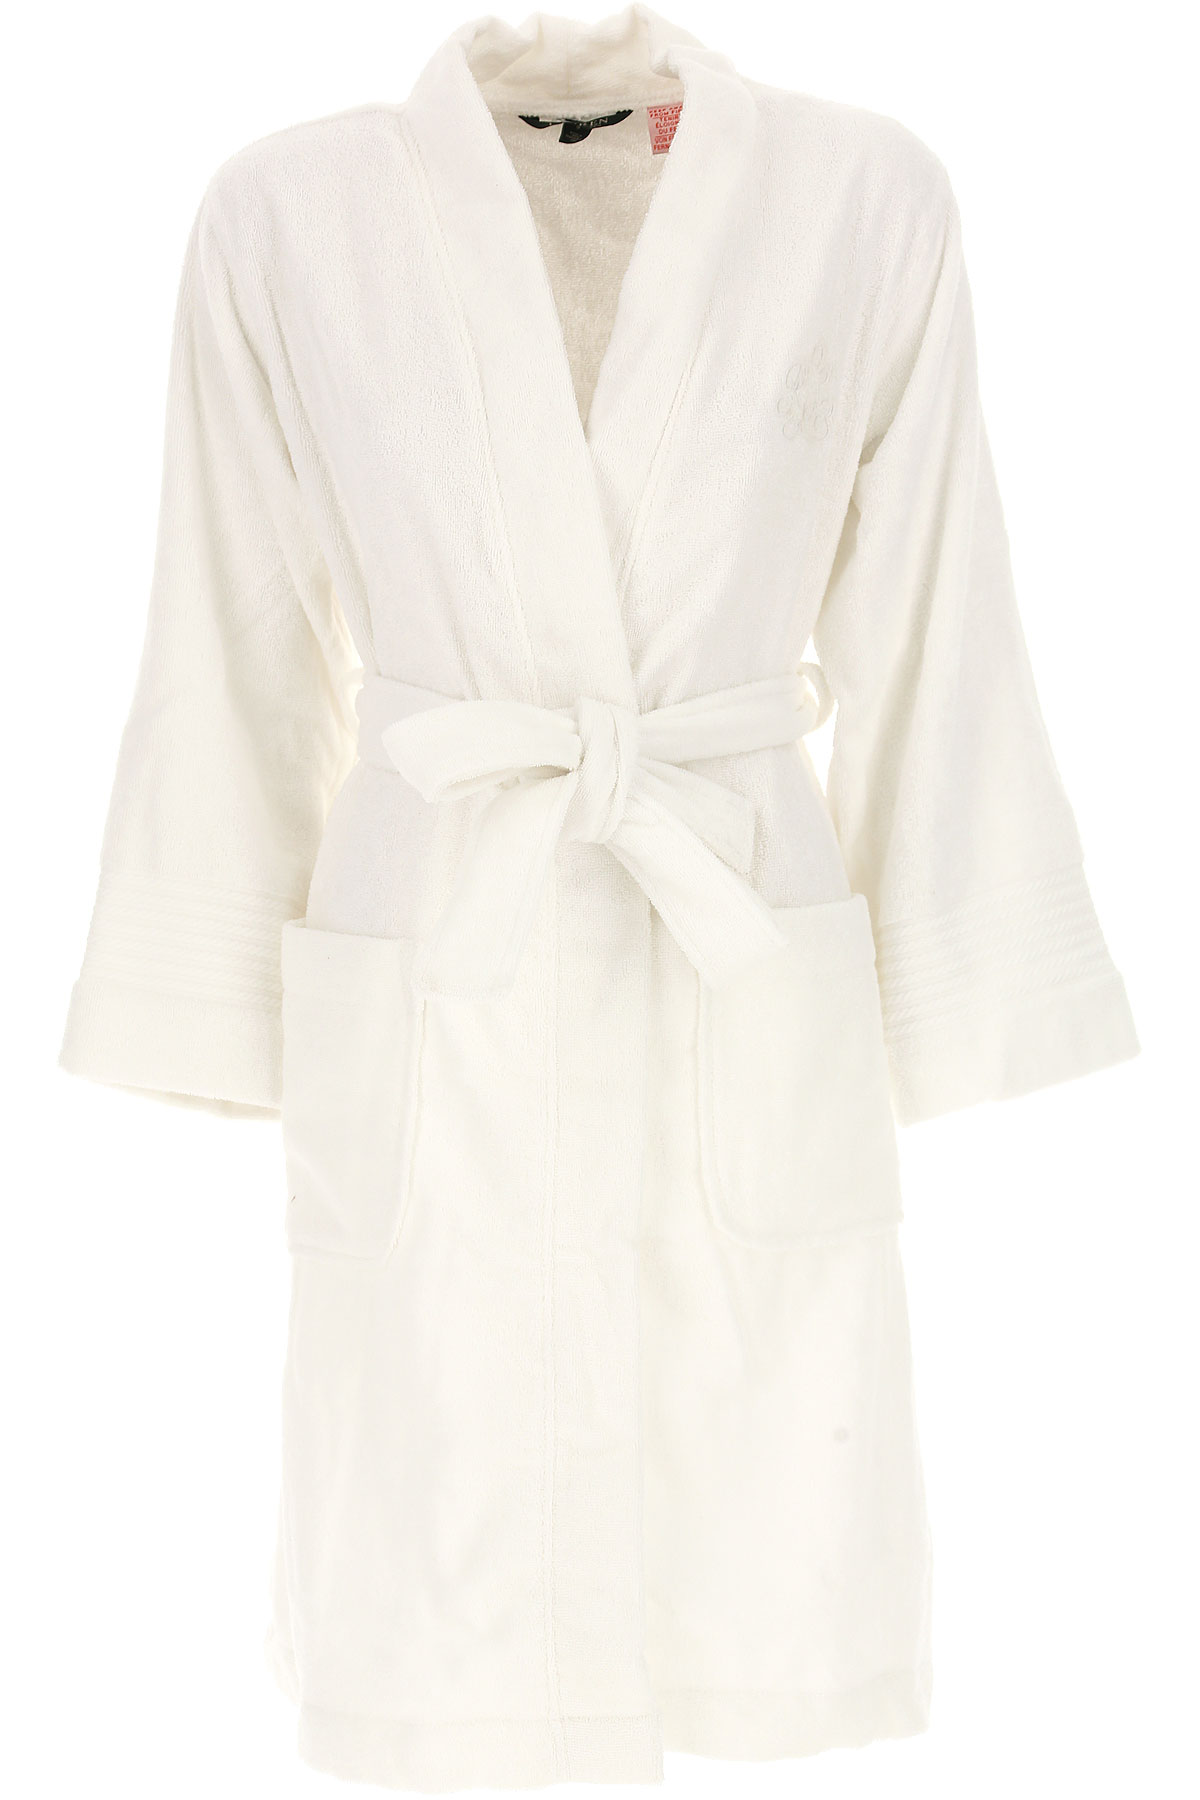 Ralph Lauren Sous-vêtement Femme , Blanc, Coton, 2017, 40 42 44